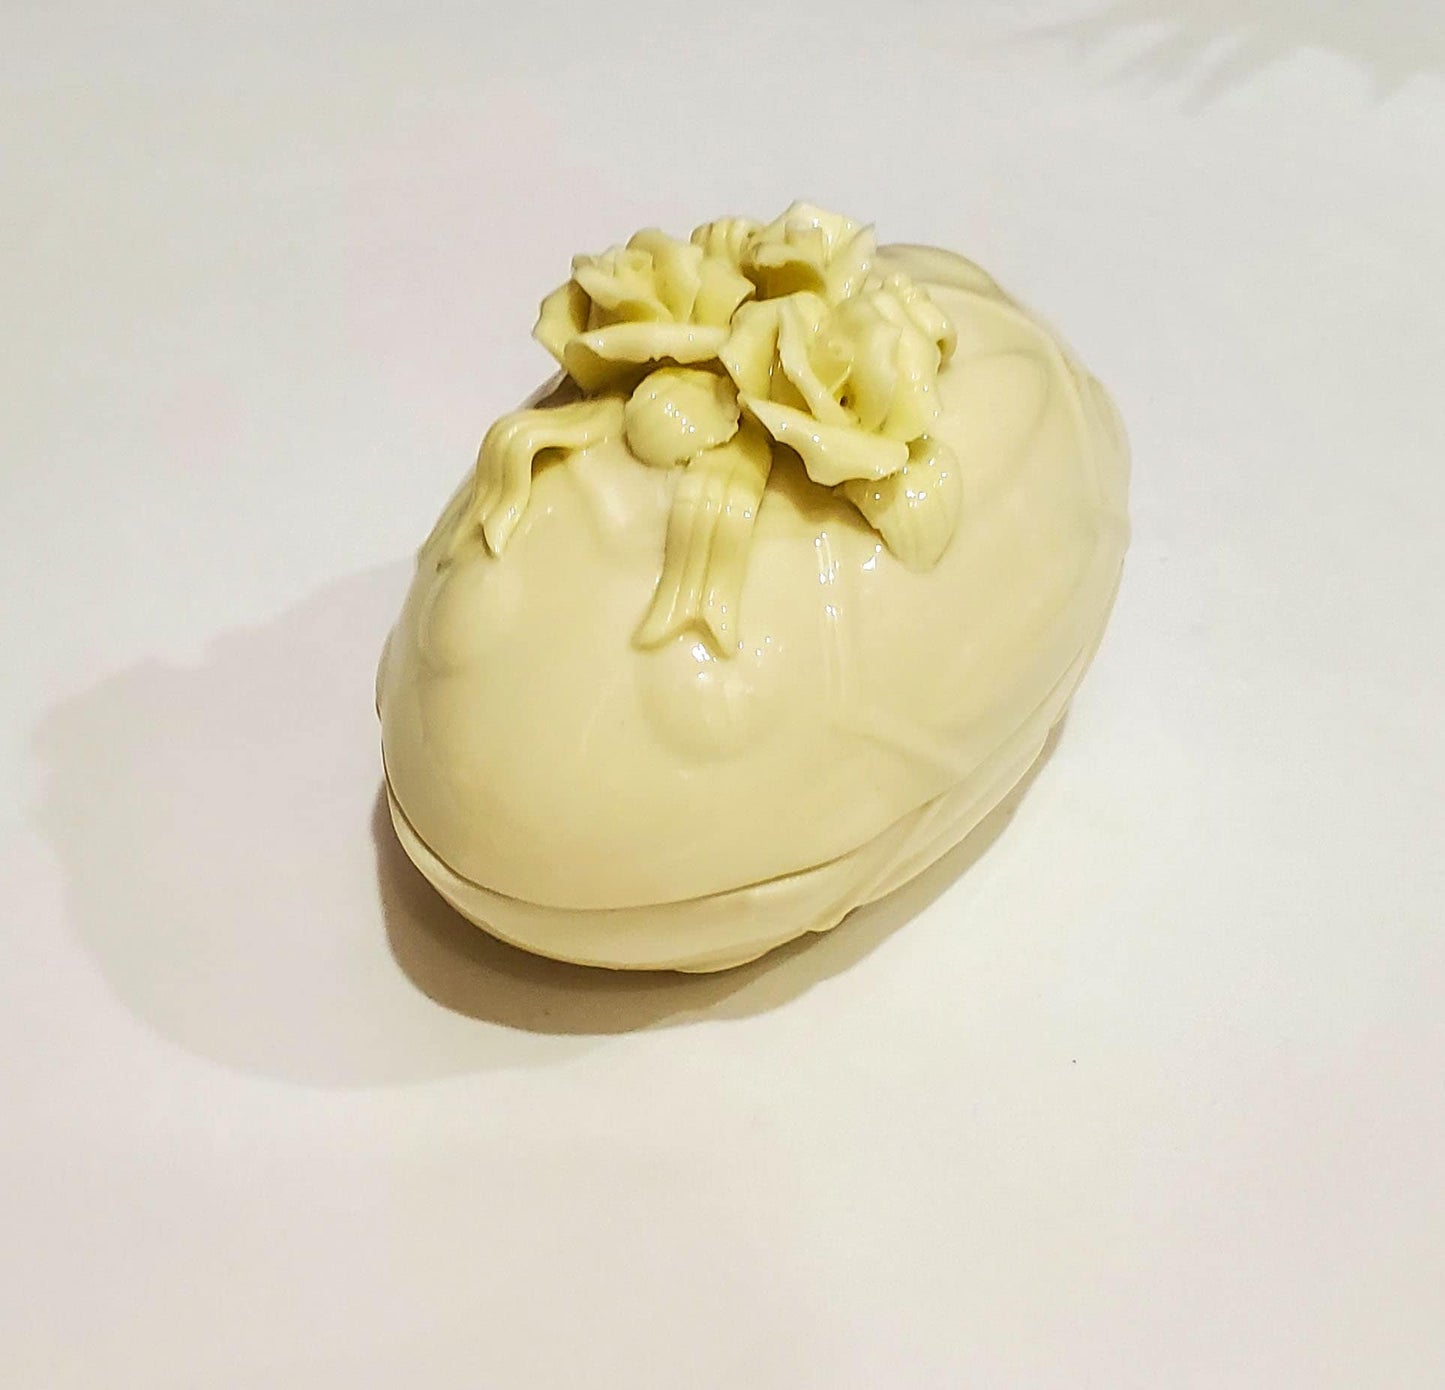 Porcelain Egg Shaped Floral Trinket Box. Off white Trinket Dish for Home or Wedding Decor - 4" Long